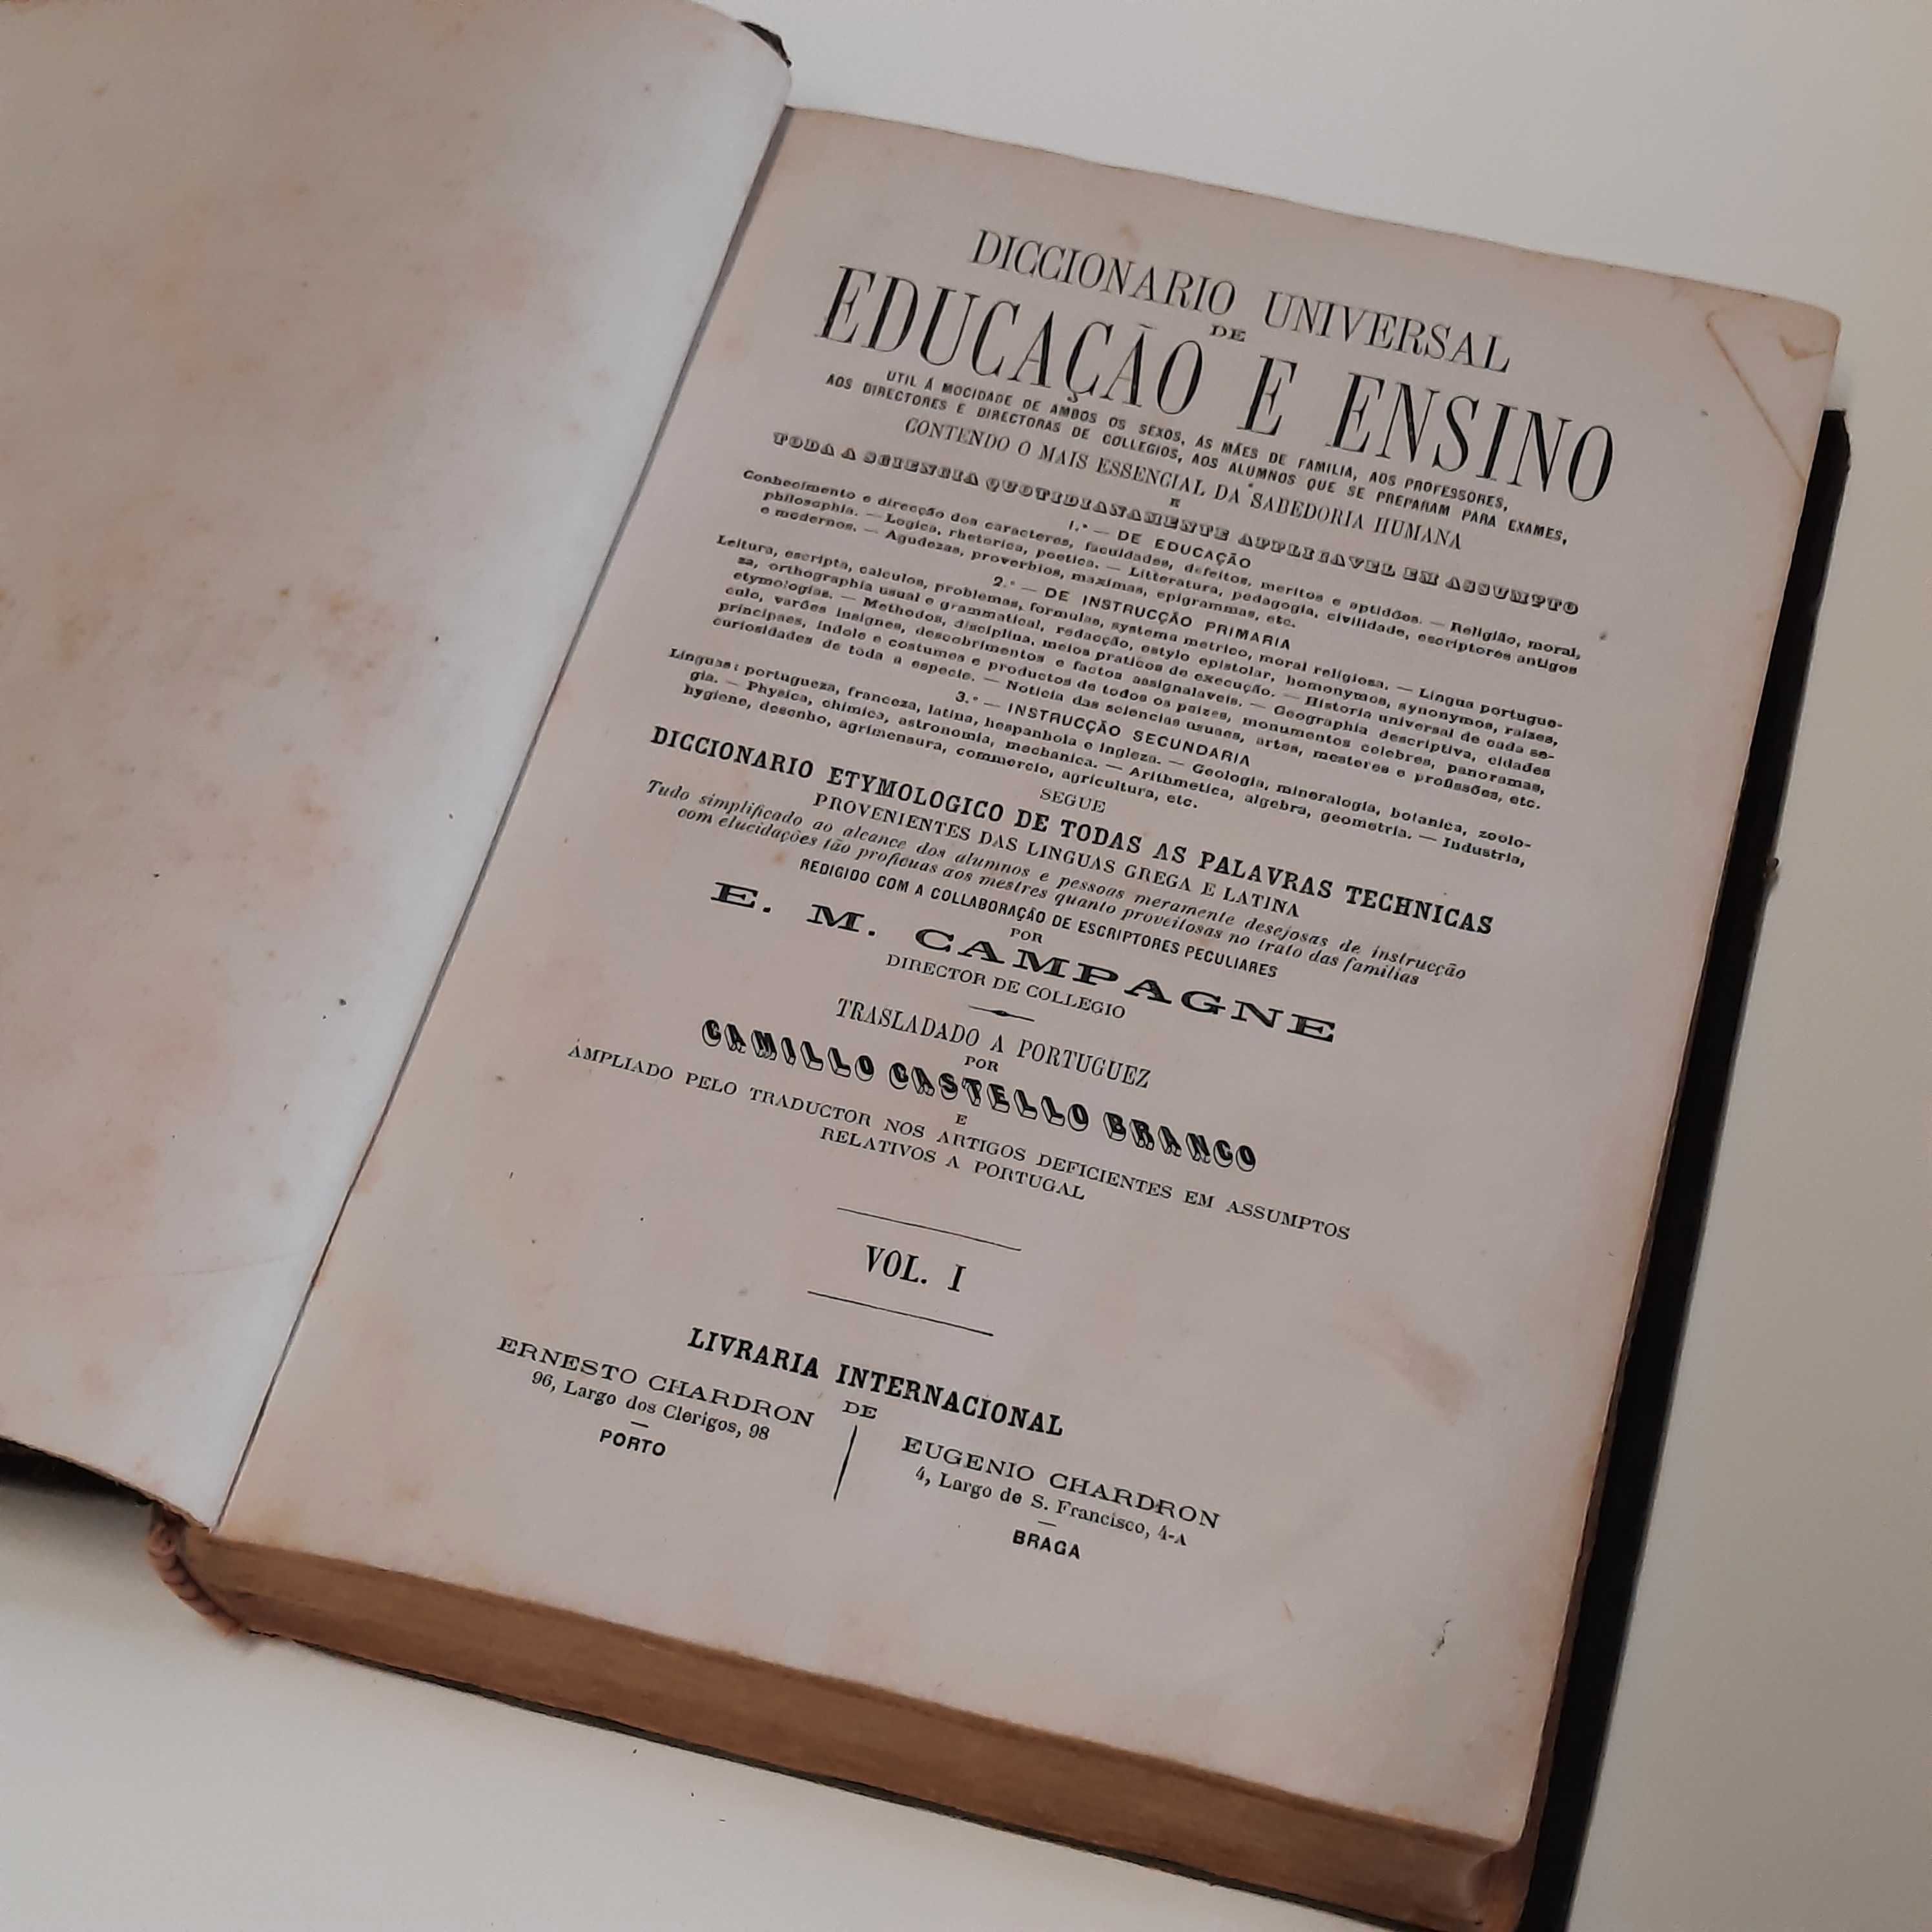 Dicionário universal de educação e ensino.  XVIII century - 1873